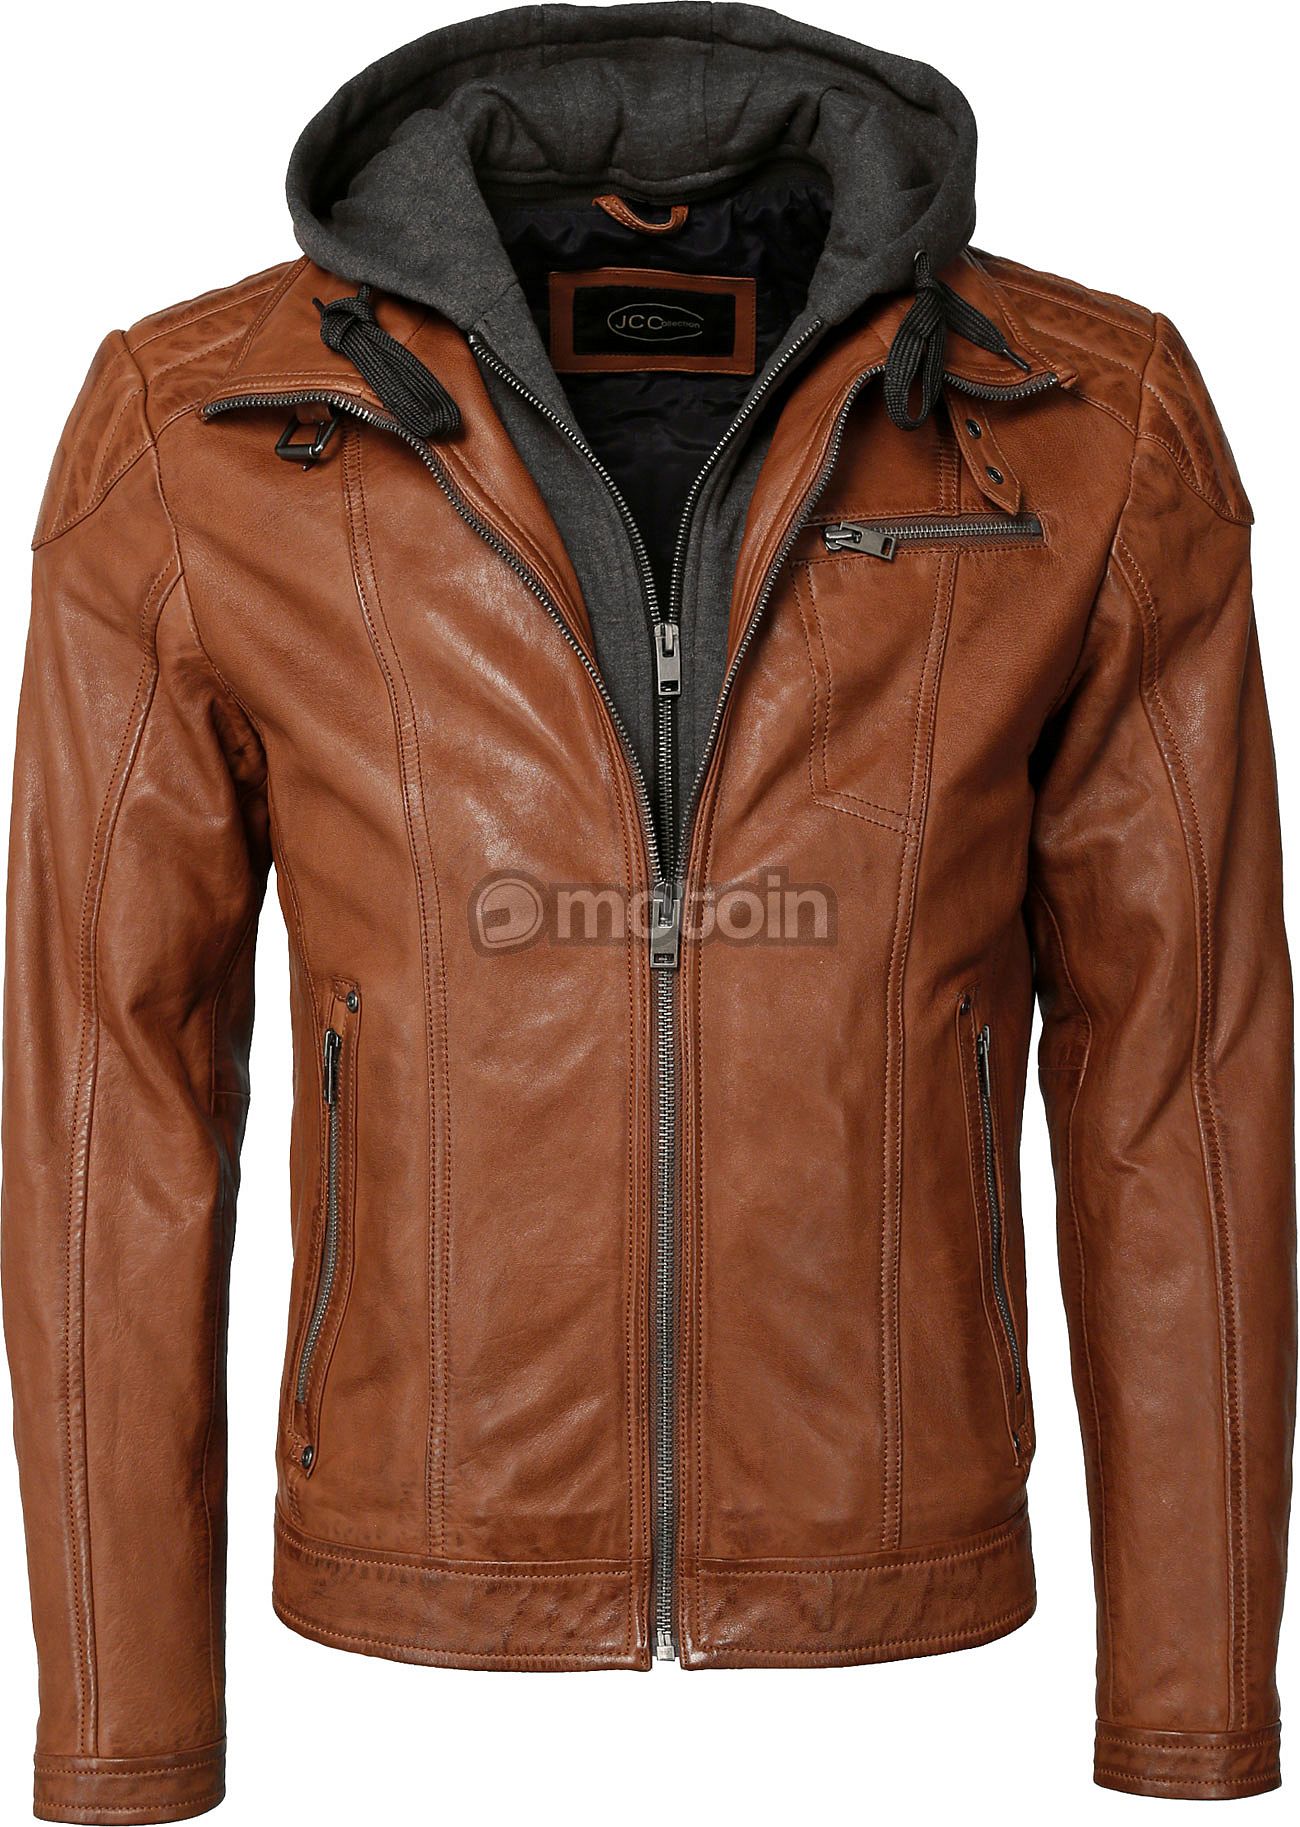 leather jacket Lamb Nappa, JCC